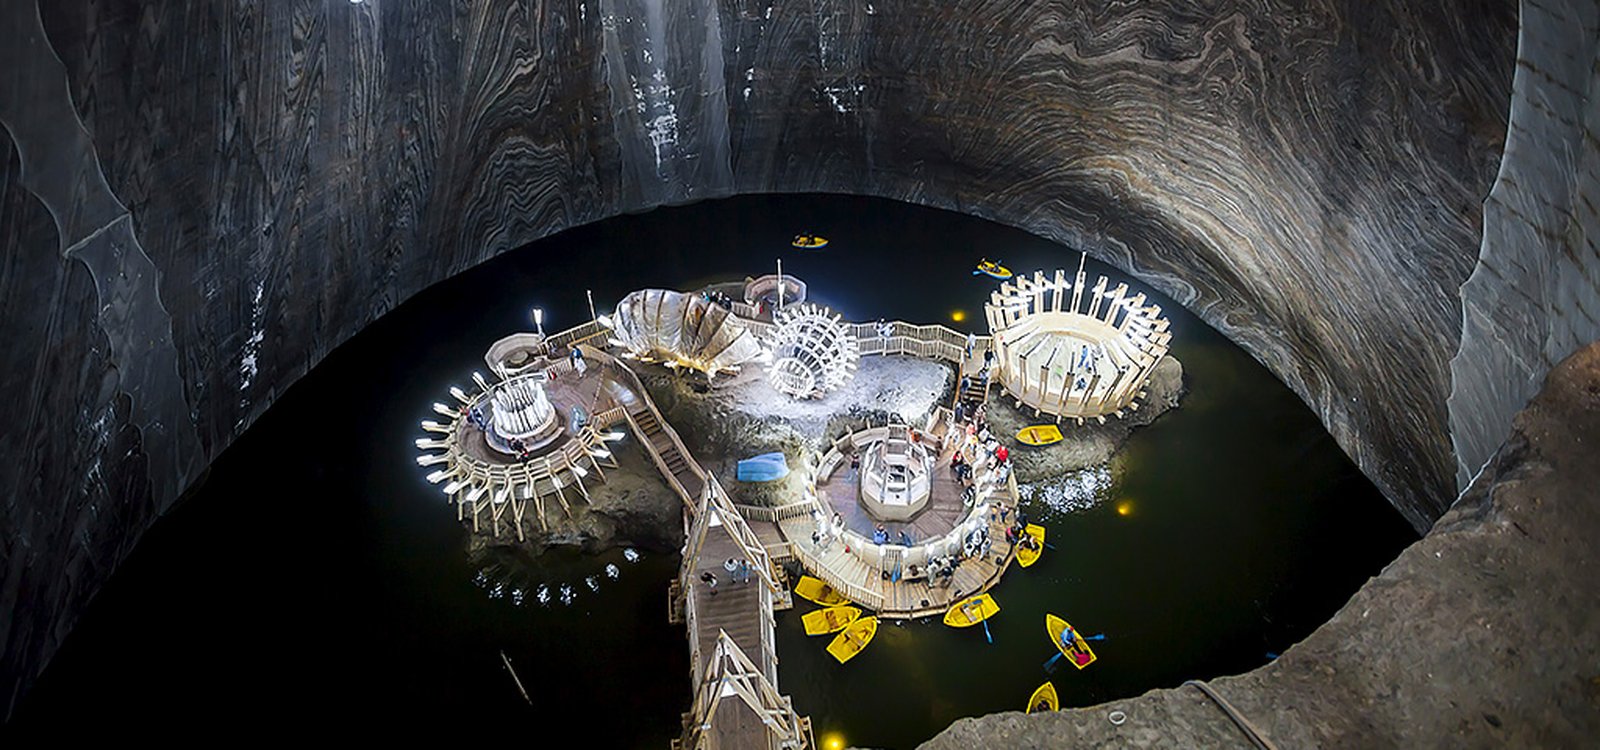 <p>Au fond de la mine de sel de Turda, en Roumanie, s’est formé un lac souterrain sur lequel les visiteurs peuvent faire des tours en barque.</p>
